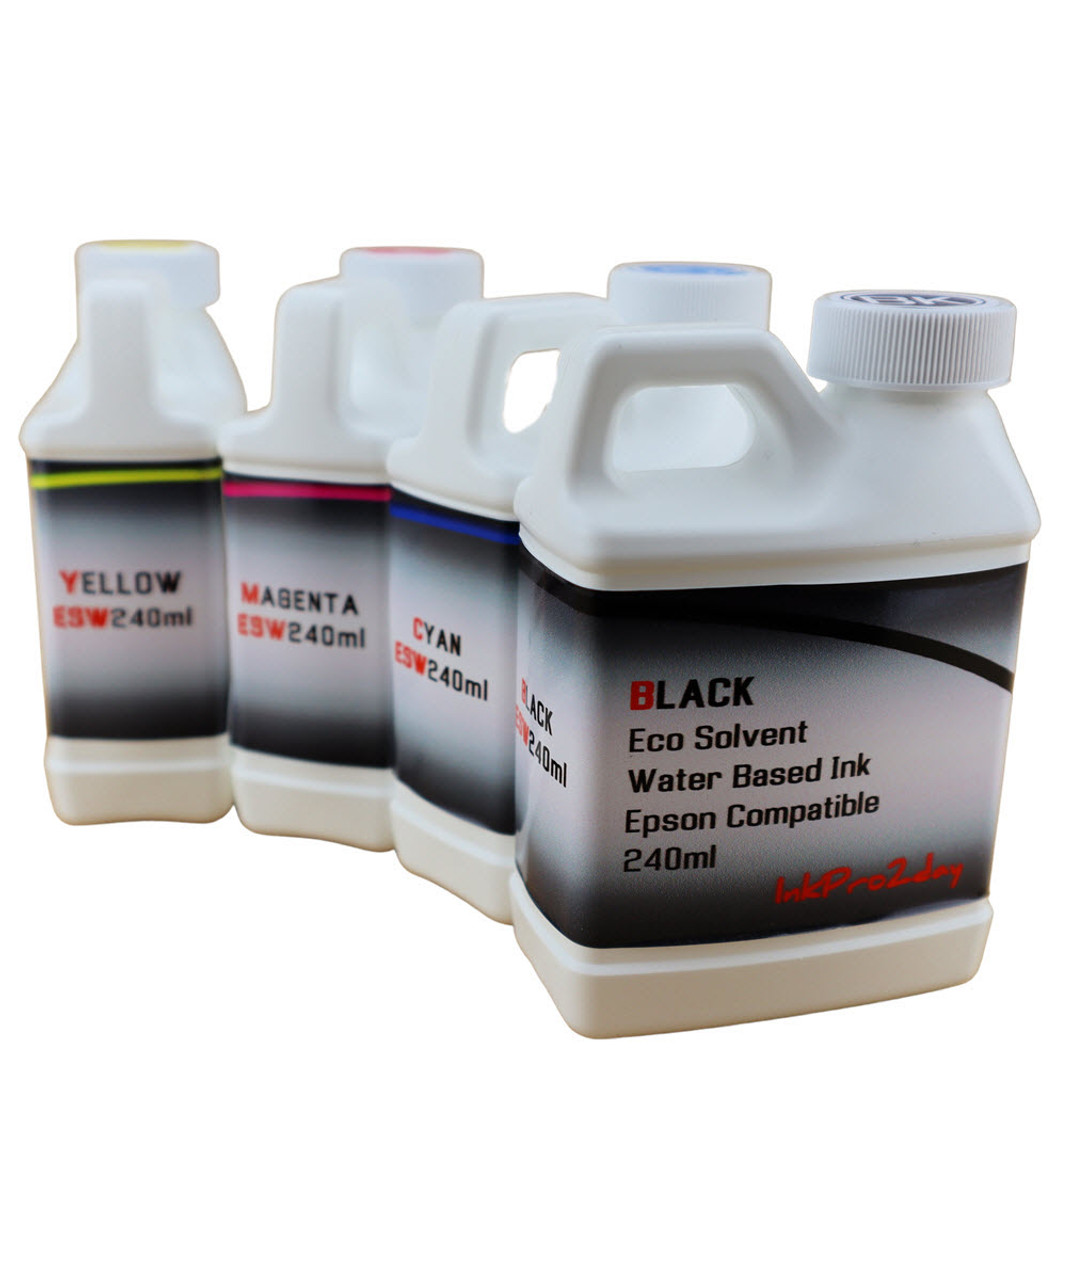 Eco Solvent Water Based Ink 4- 240ml bottles for Epson EcoTank ET-3710 ET-3760 Printers